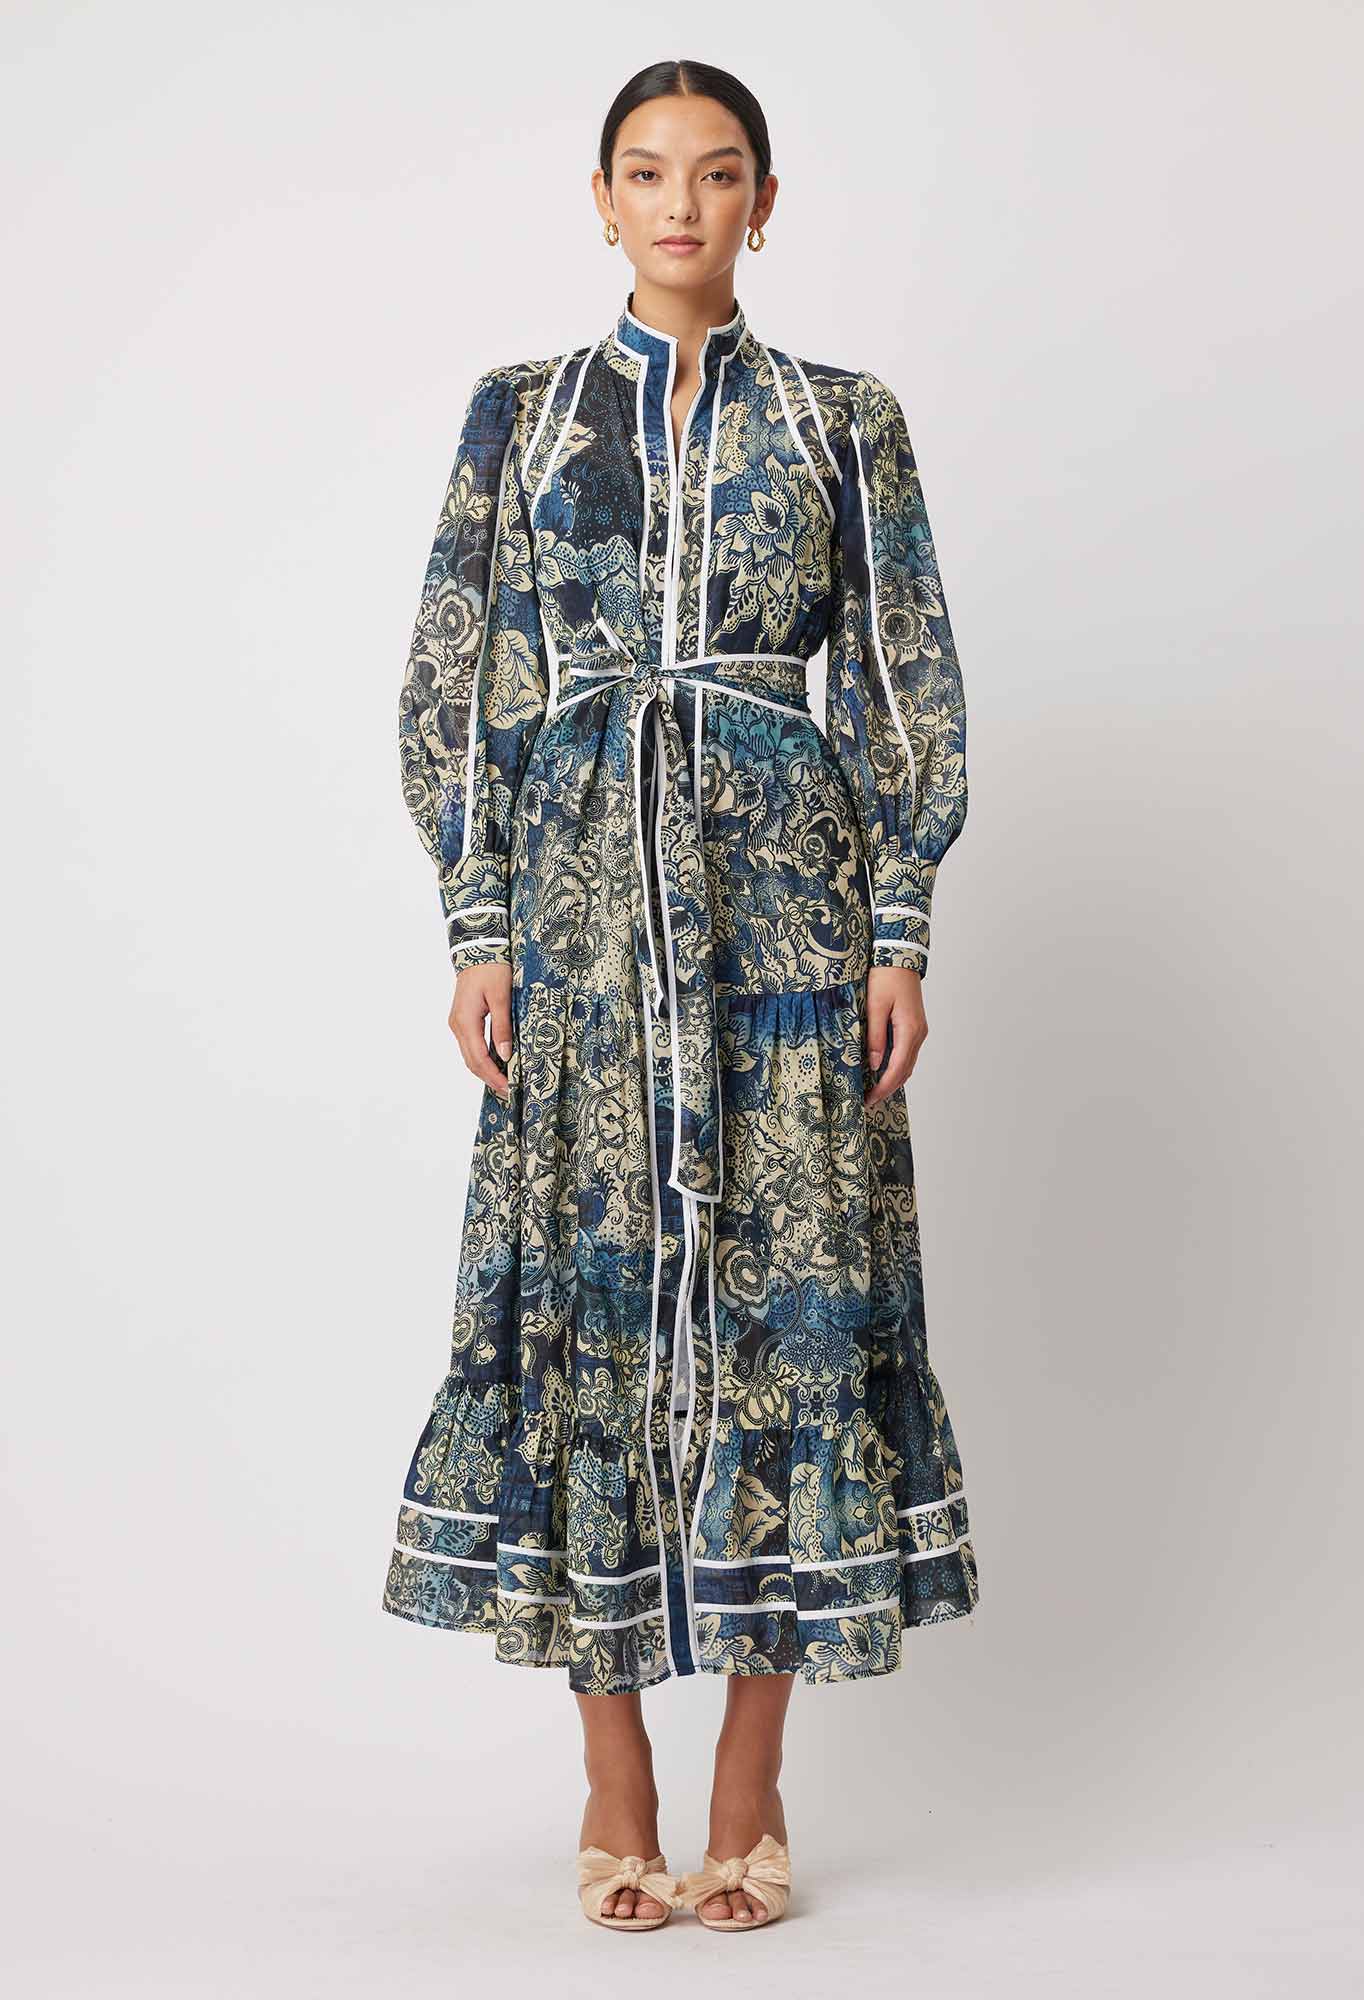 Pantea Silk/Cotton Dress in Esfahan Print